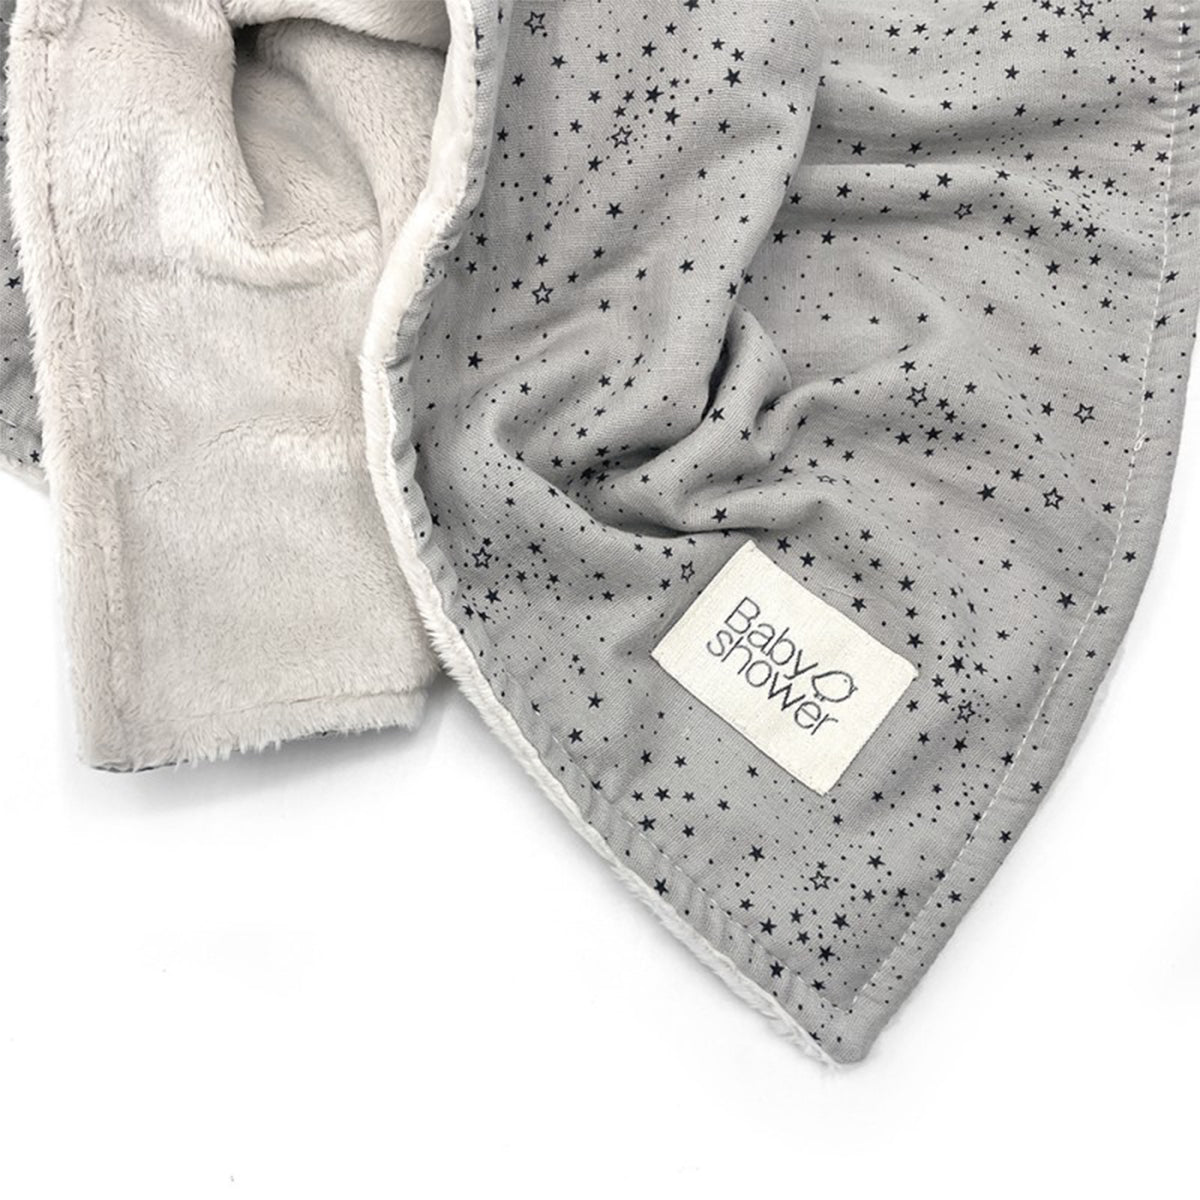 Stijlvol, warm en luxe! De fleece deken in dune sky van Babyshower! Veelzijdig in gebruik. Verkrijgbaar in verschillende varianten. Machinewasbaar. Afmeting: 66x80 cm. VanZus